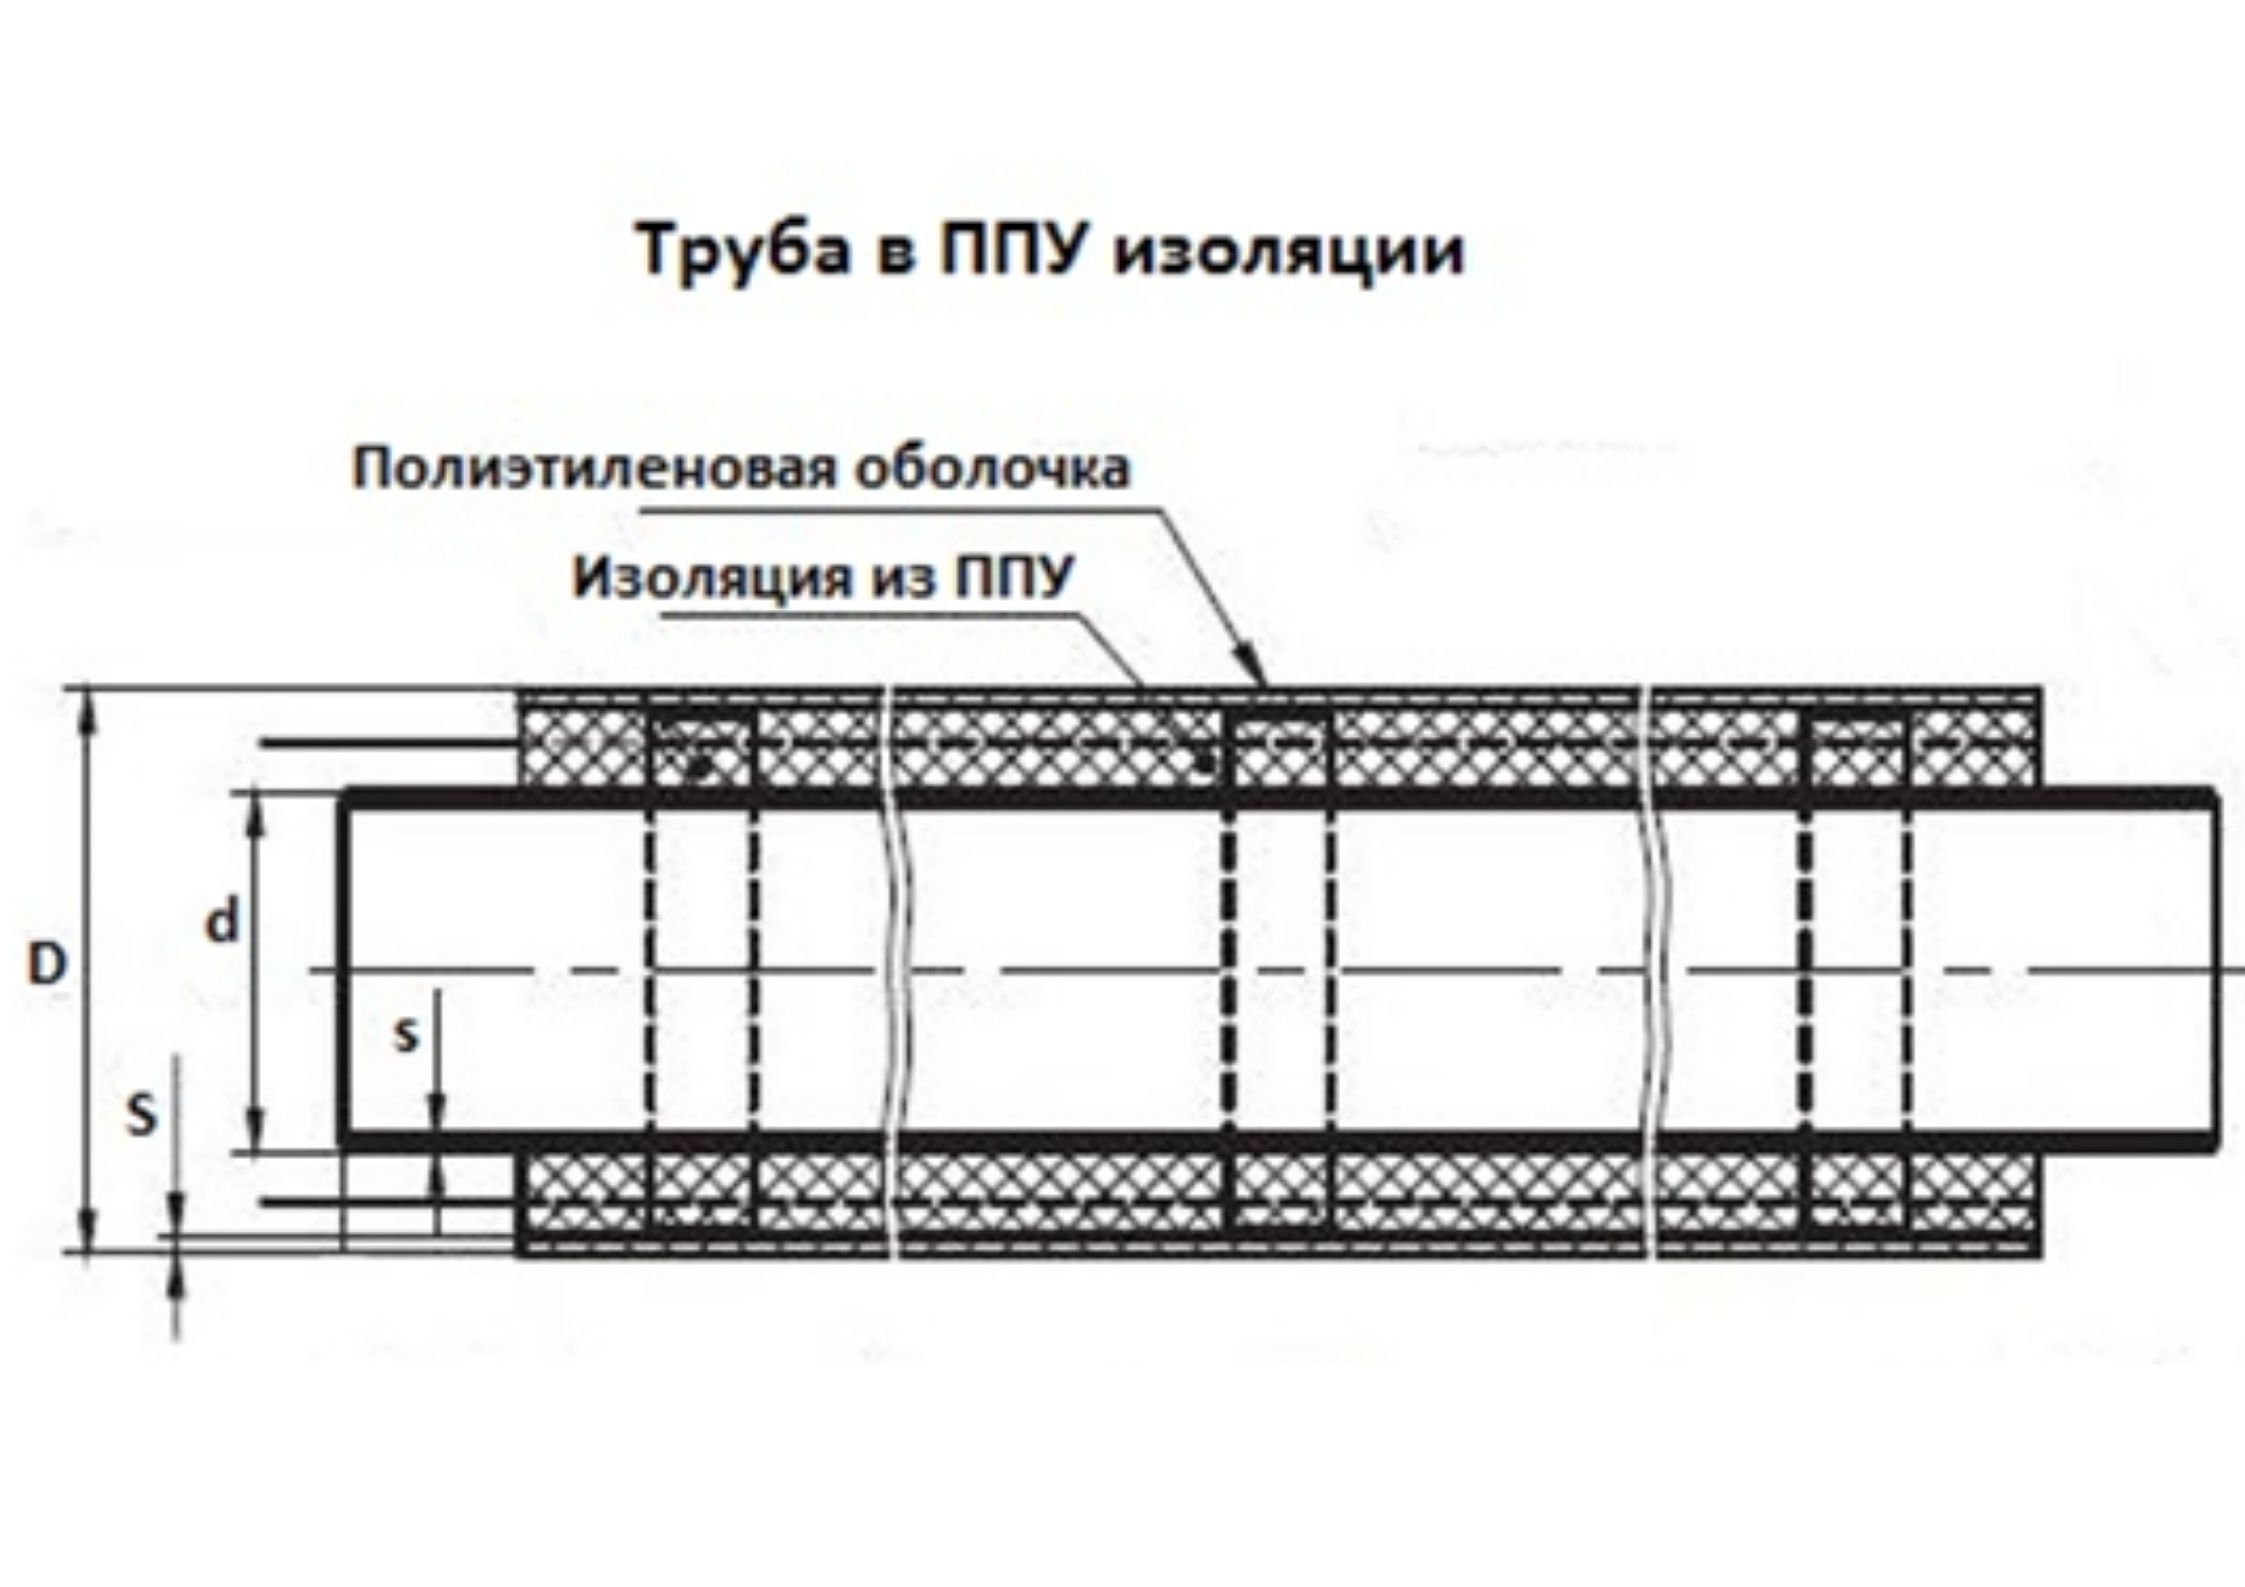 Трубы ППУ 25 в мм «Альфа-тех» в Казани